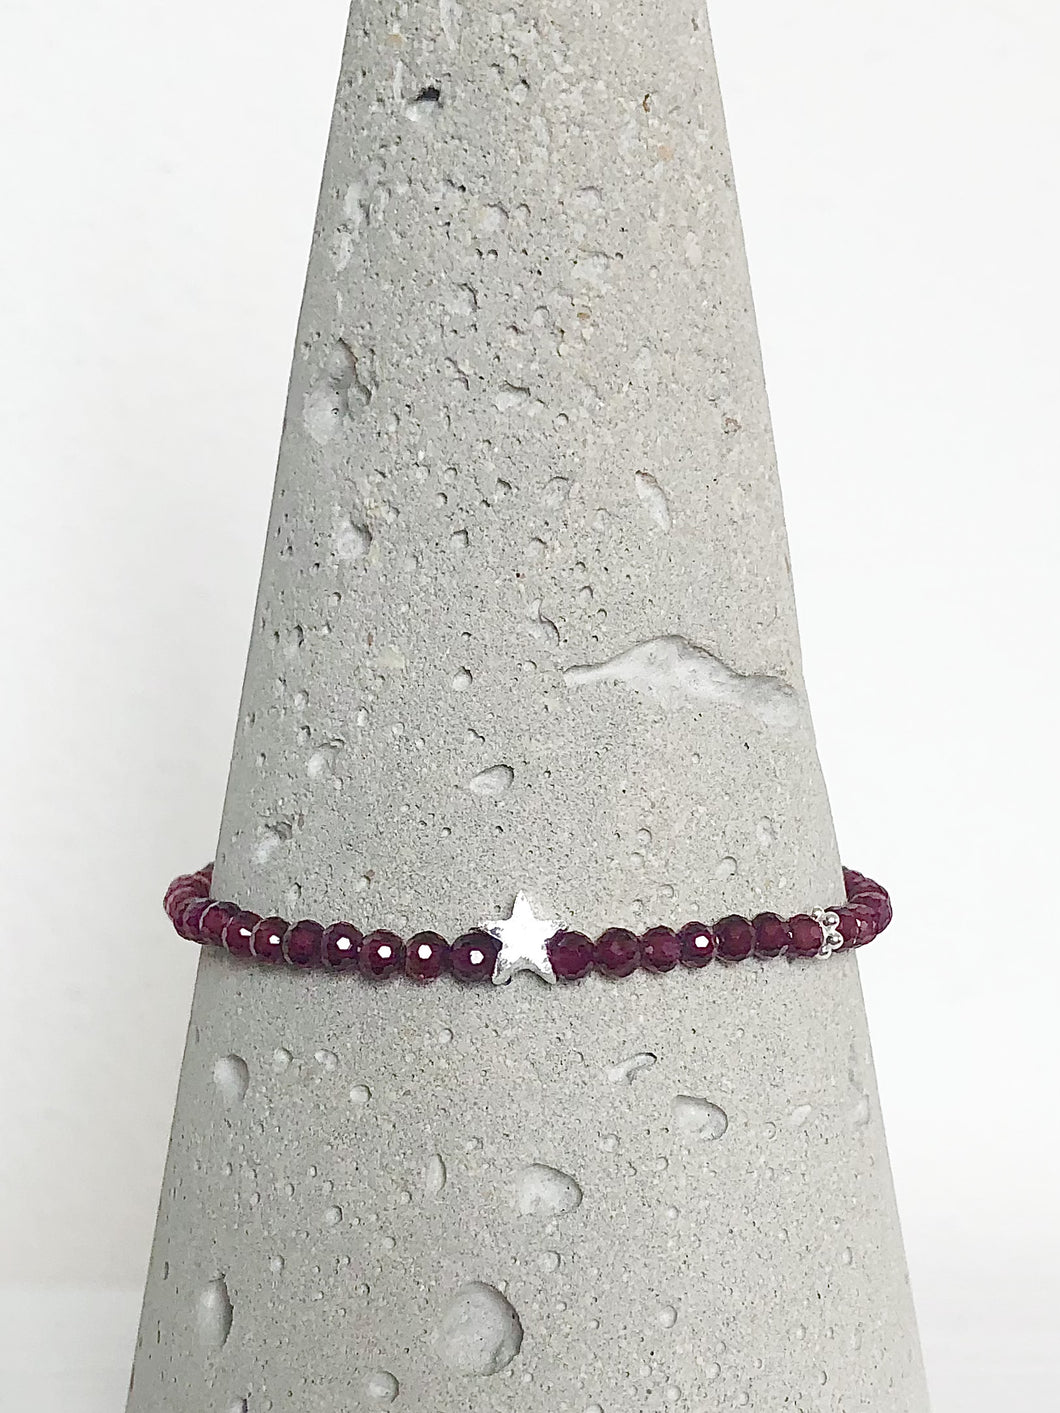 Klassisch-dezentes Armband aus facettiertem rotem Granat und einem mattierten Stern aus Echtsilber, begleitet von einem zierlichen Silberblümchen, Detailansicht auf Betonkegel.